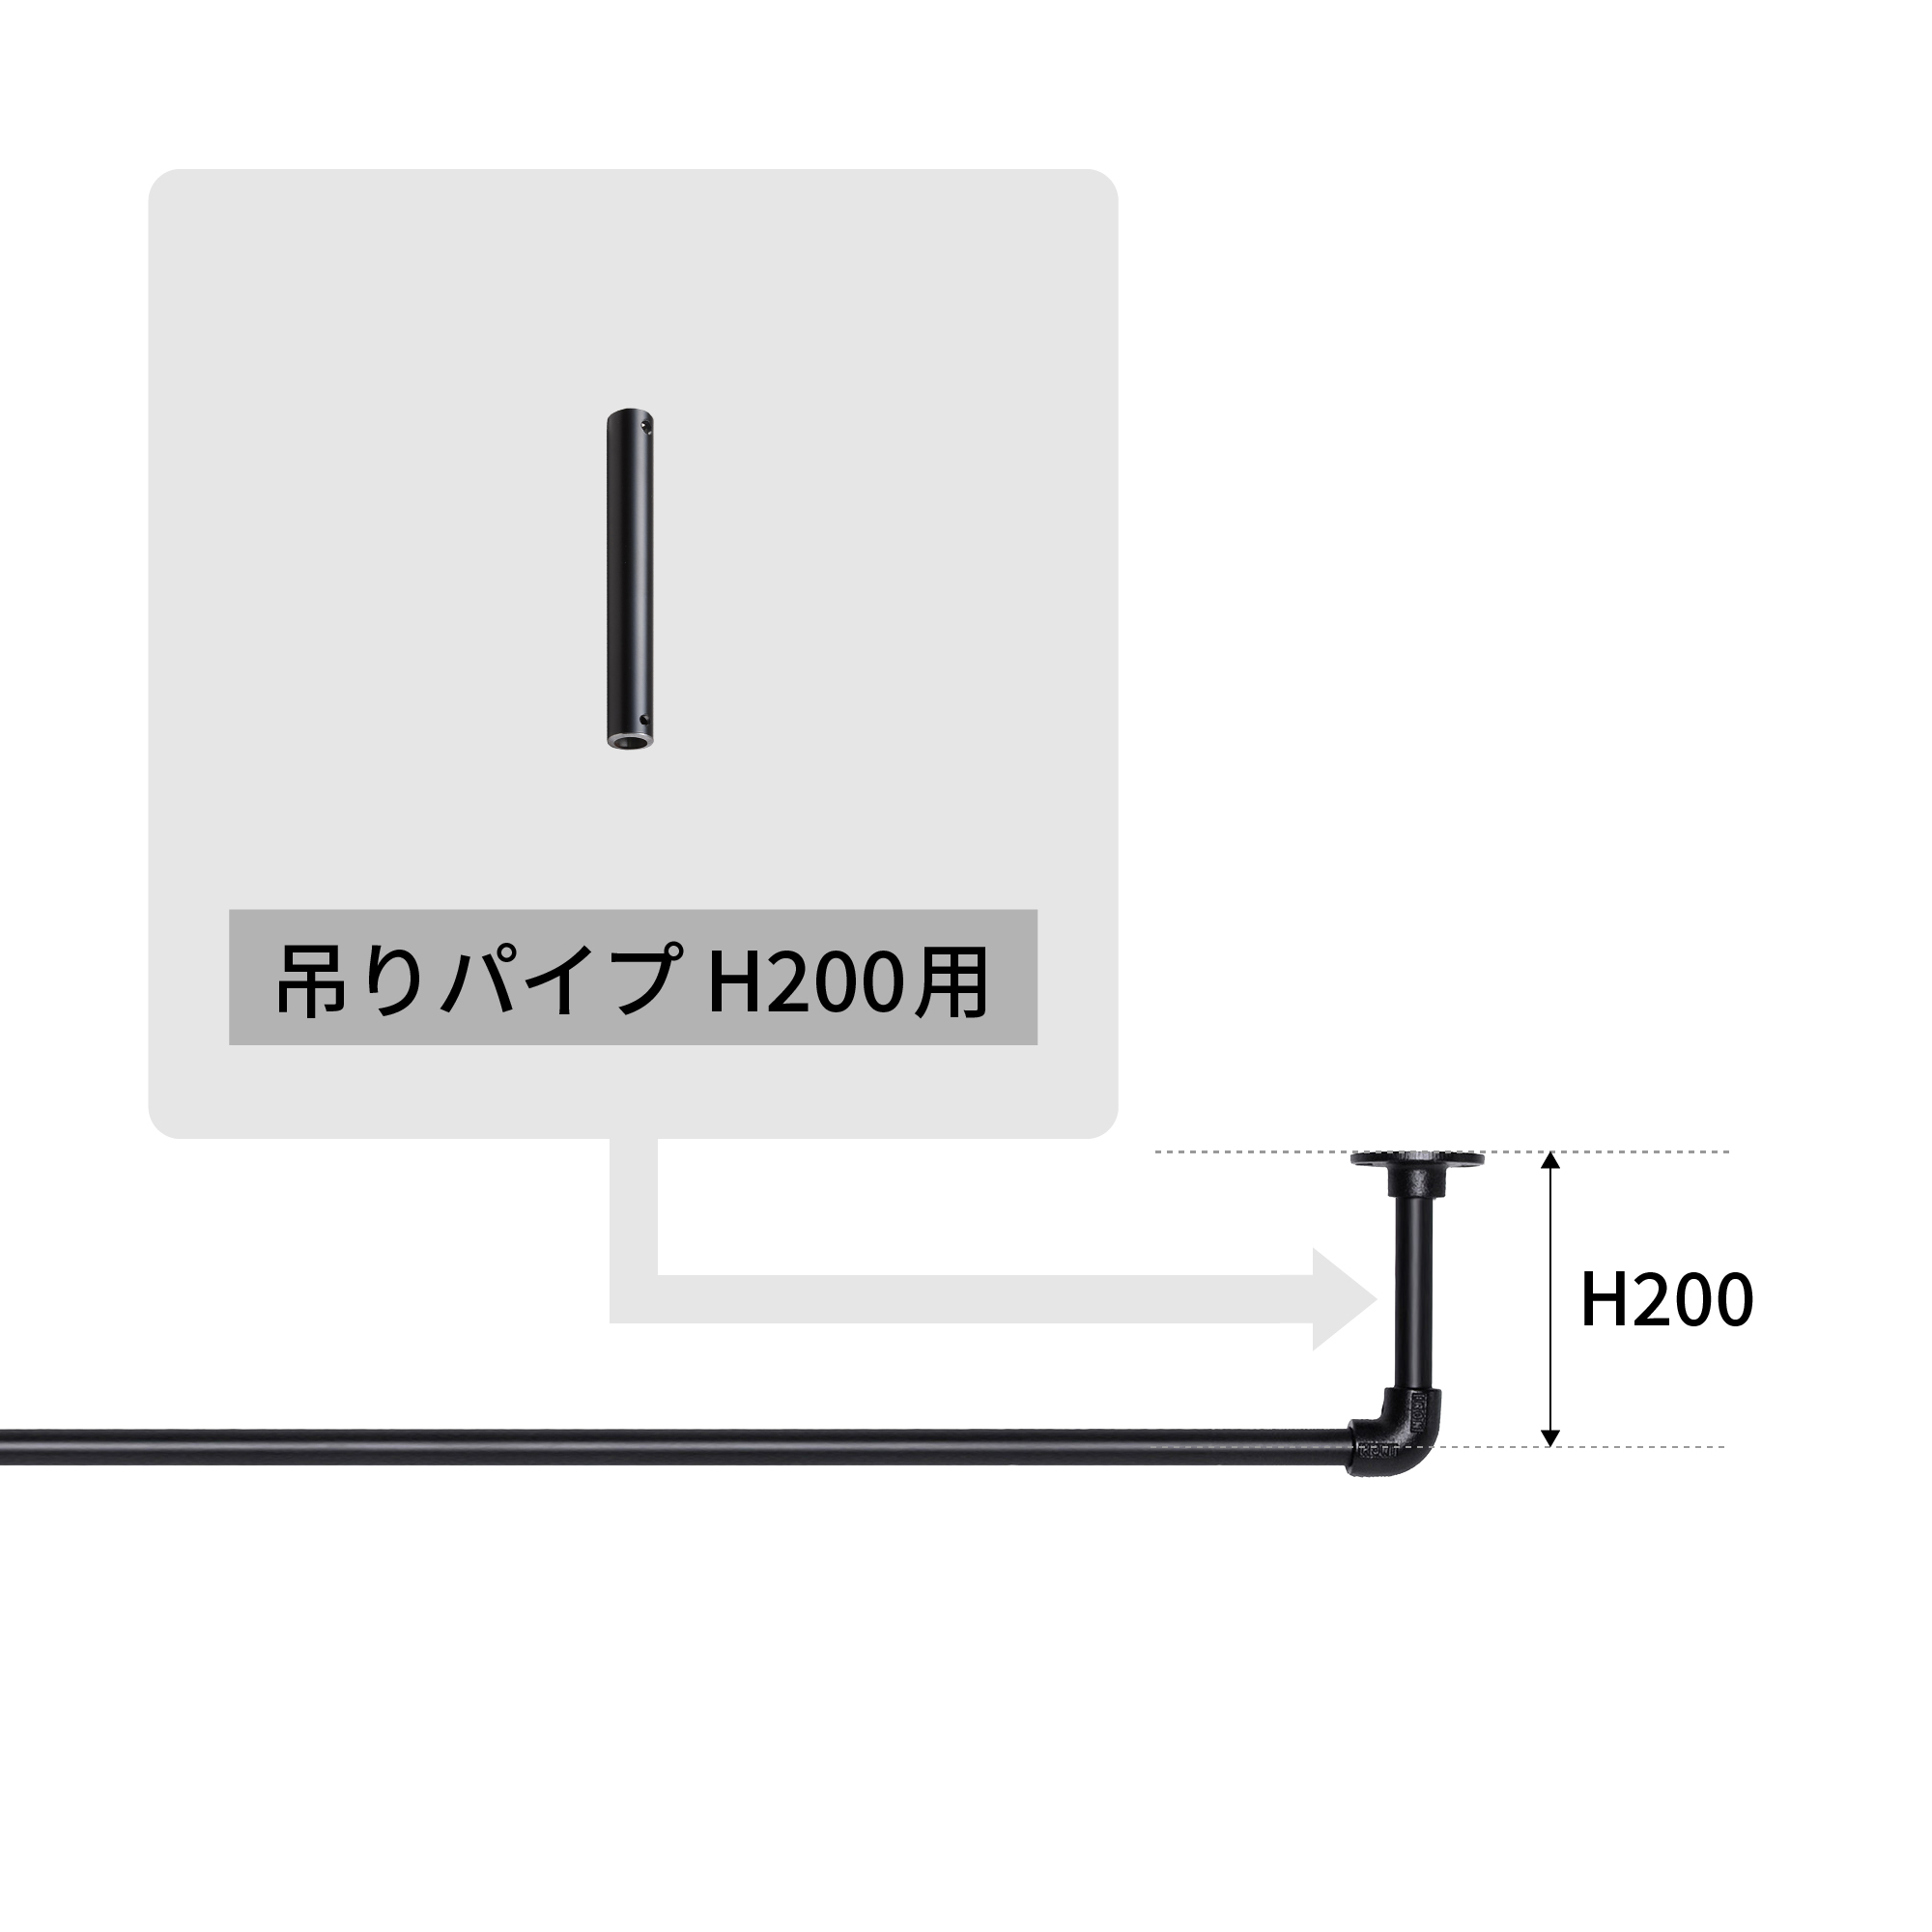 アイアンハンガーパイプ 吊りパイプ H200用 ブラック PS-HB008-43-G141